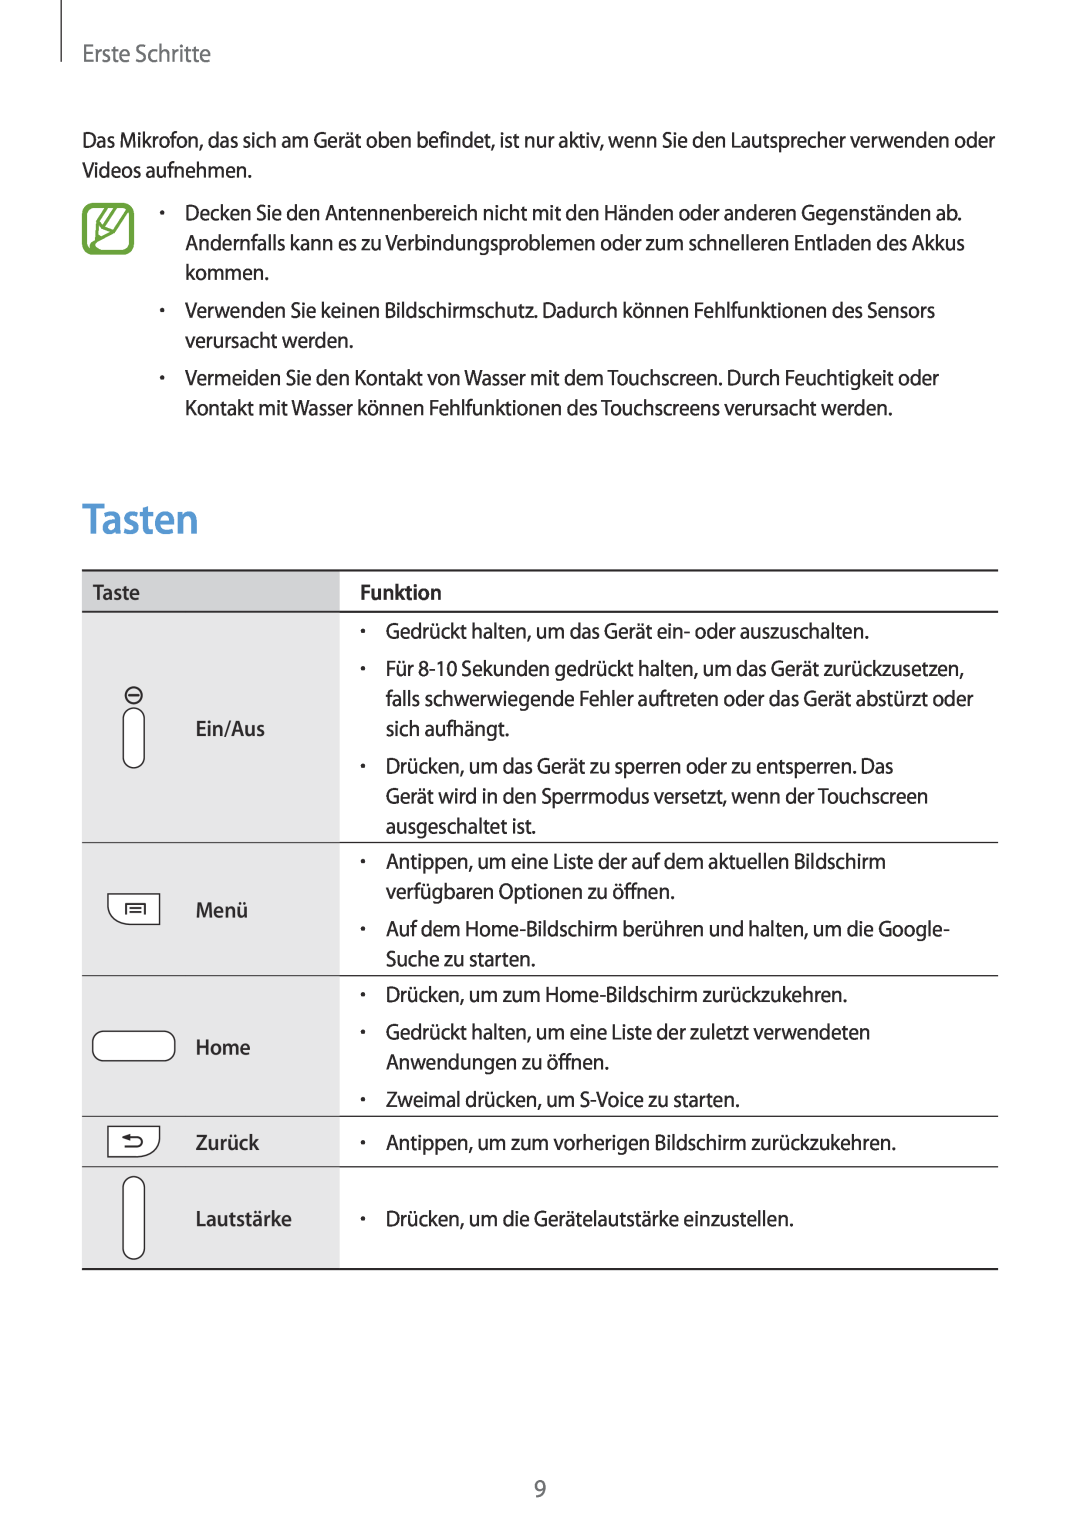 Samsung GT-N7100TADCOS, GT-N7100ZNDTUR manual Tasten, Erste Schritte, Funktion, Ein/Aus, Menü, Home, Zurück, Lautstärke 